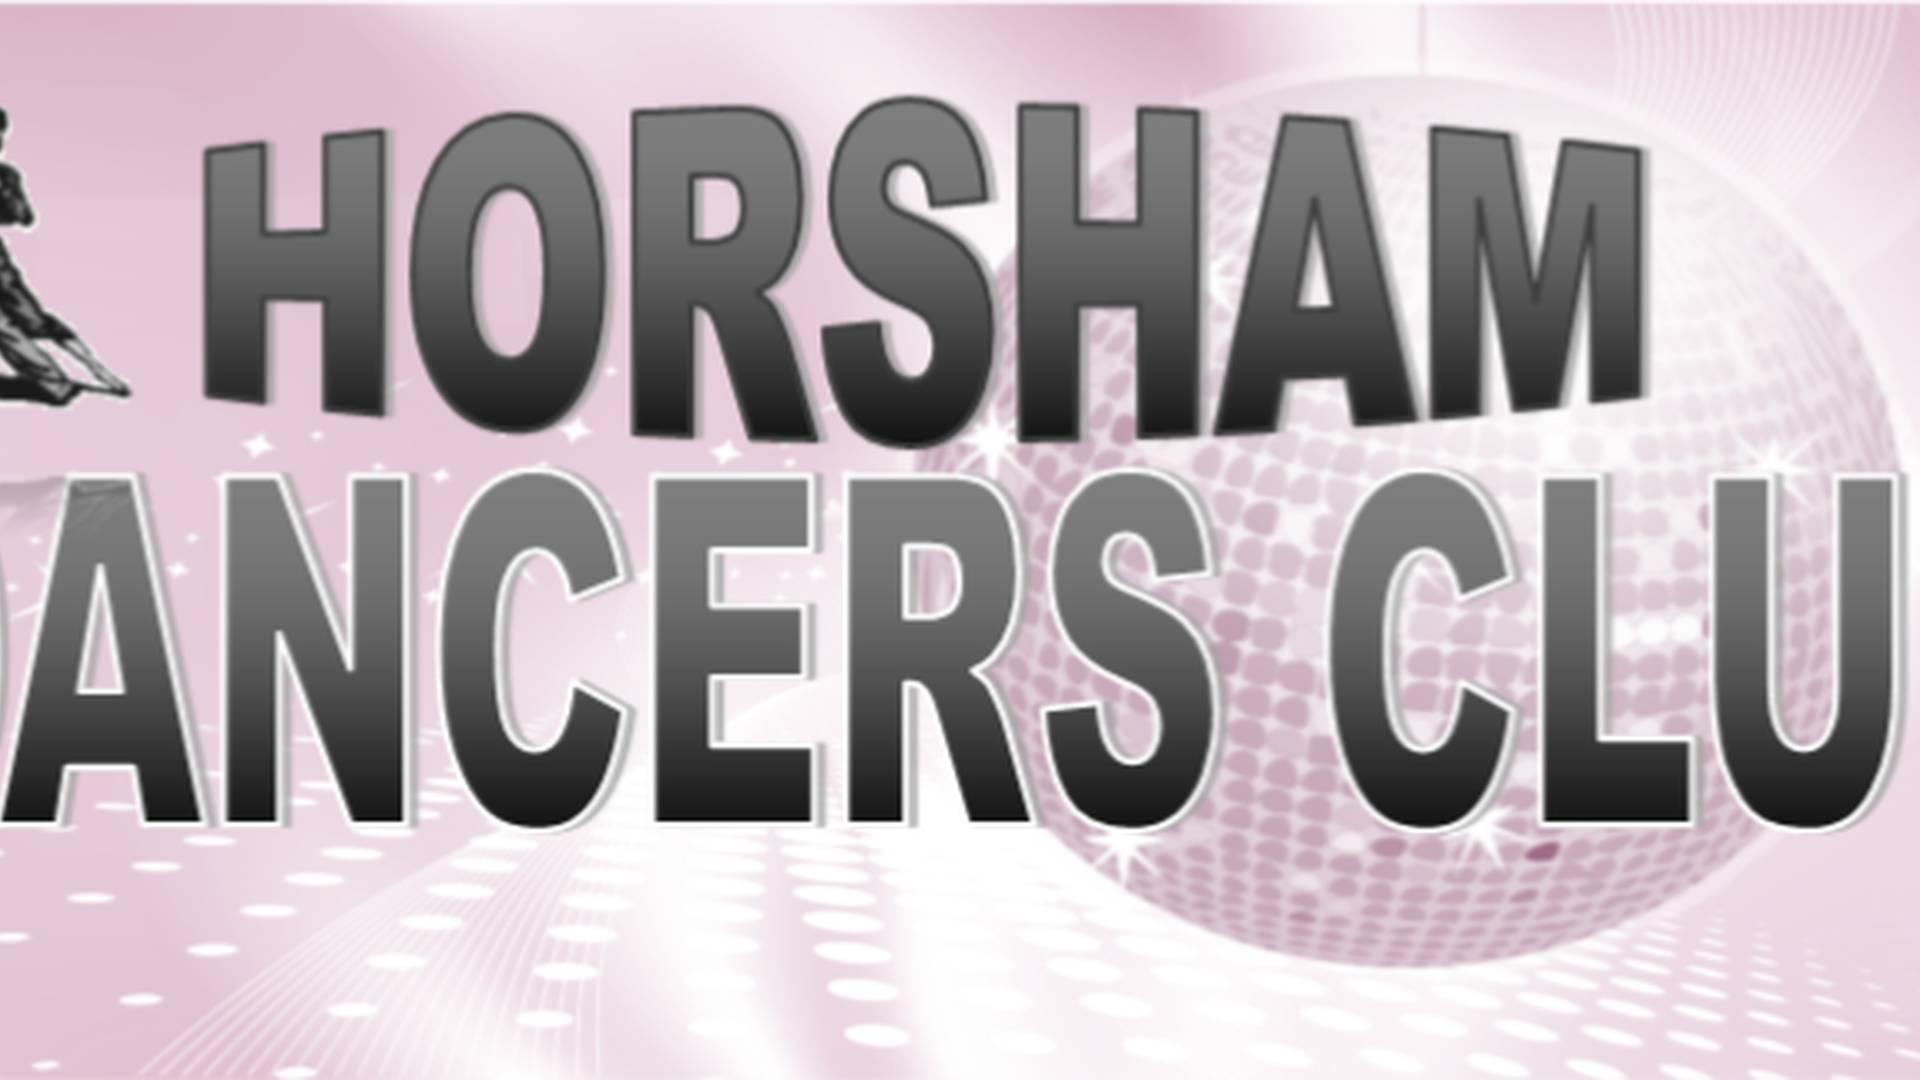 Horsham Dancers Club photo